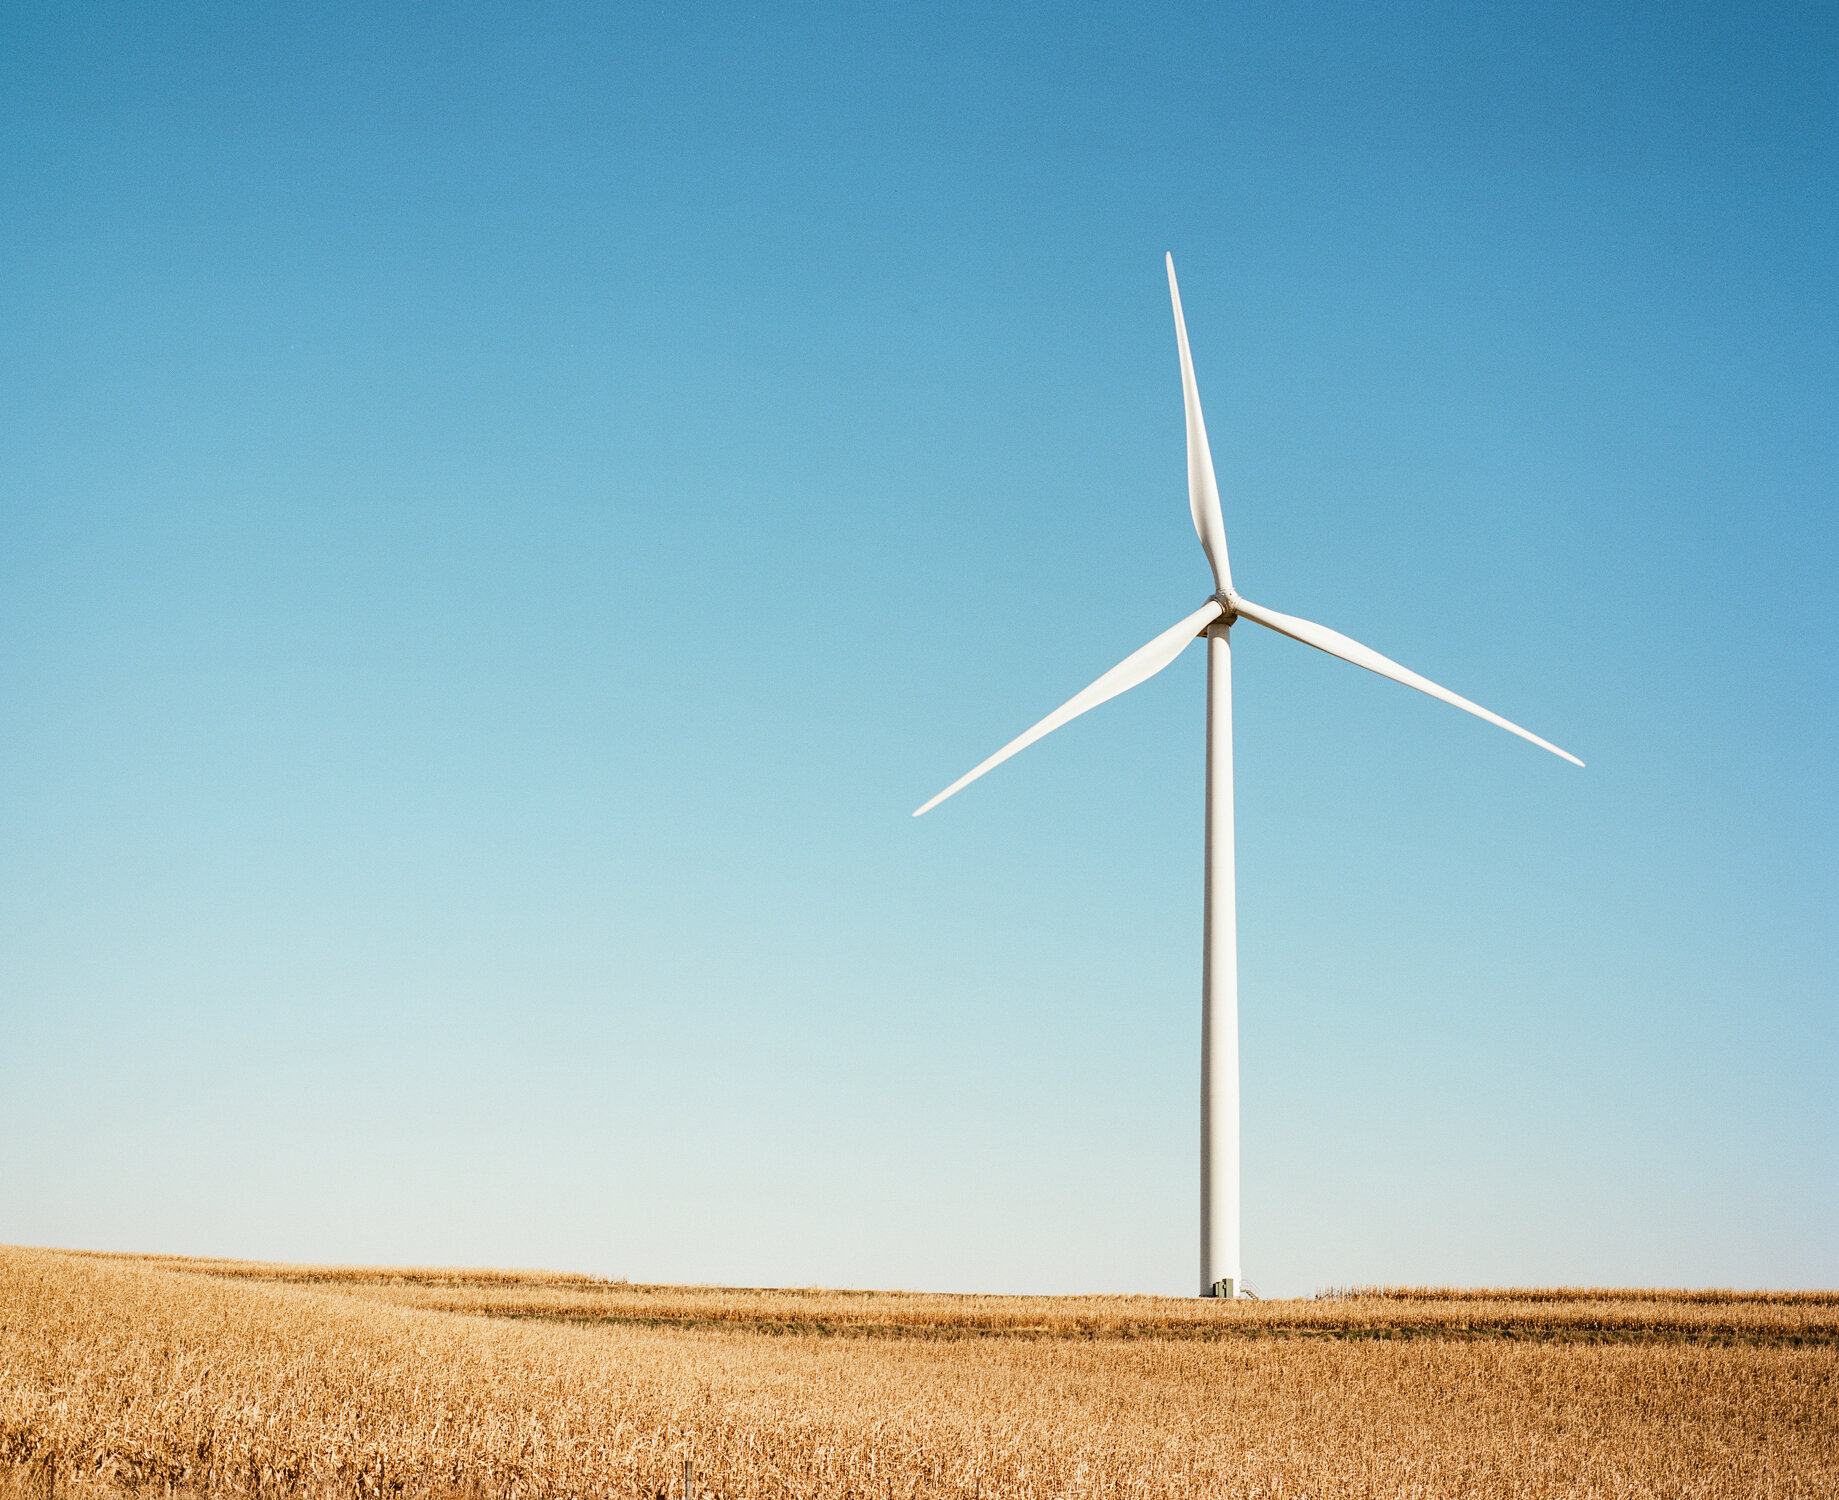 Illinois_Farmland_Wind_Turbine_RJS_000037500006.jpg